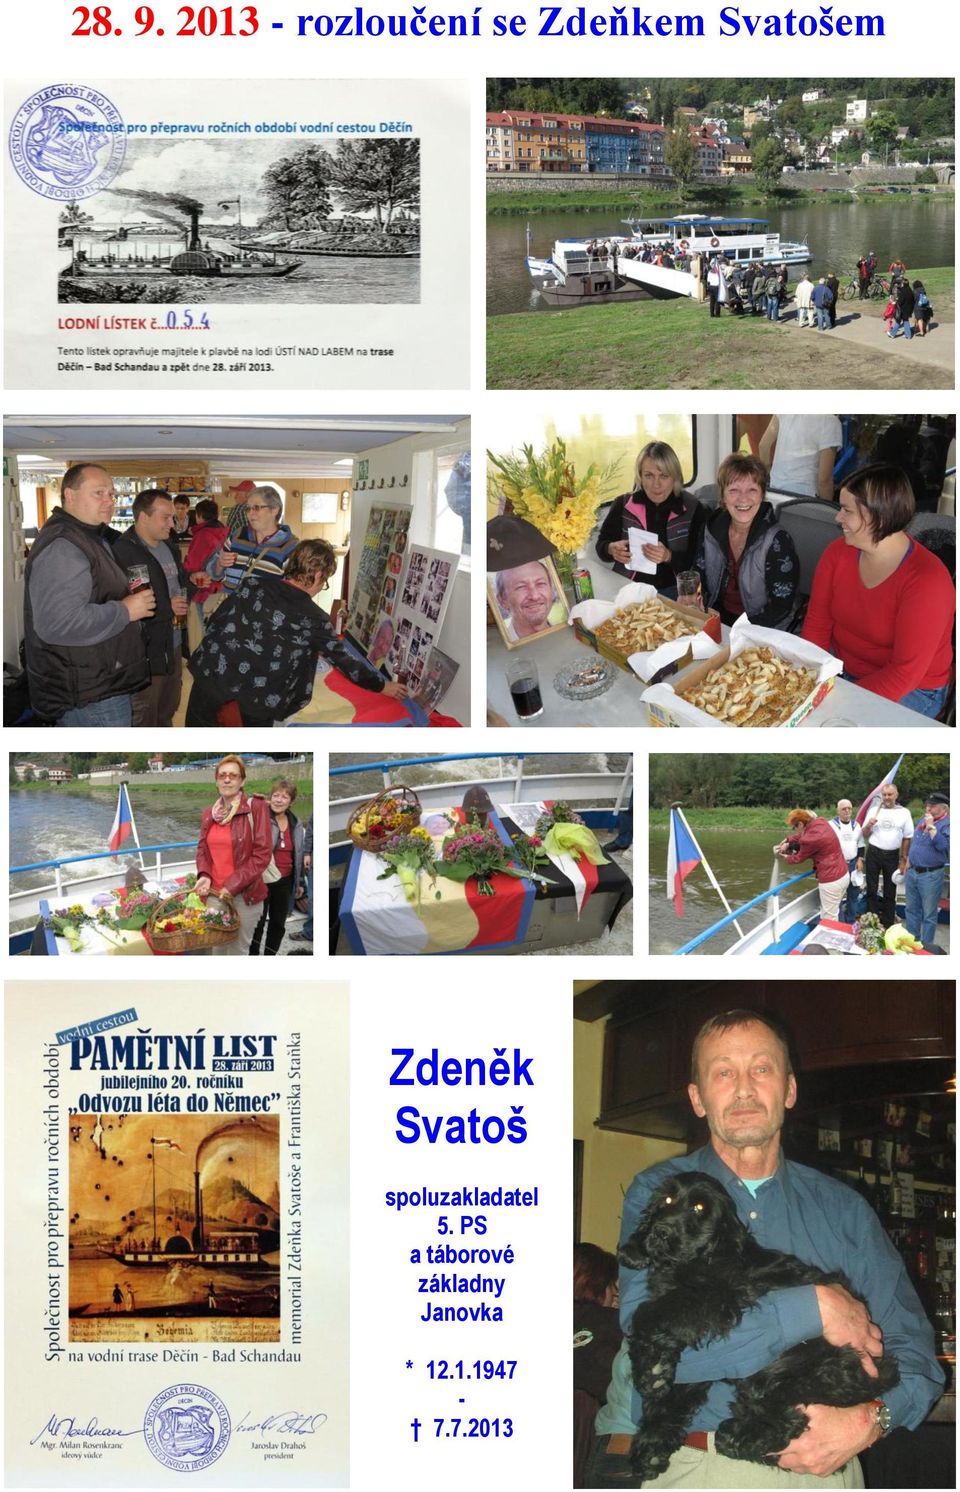 Svatošem Zdeněk Svatoš